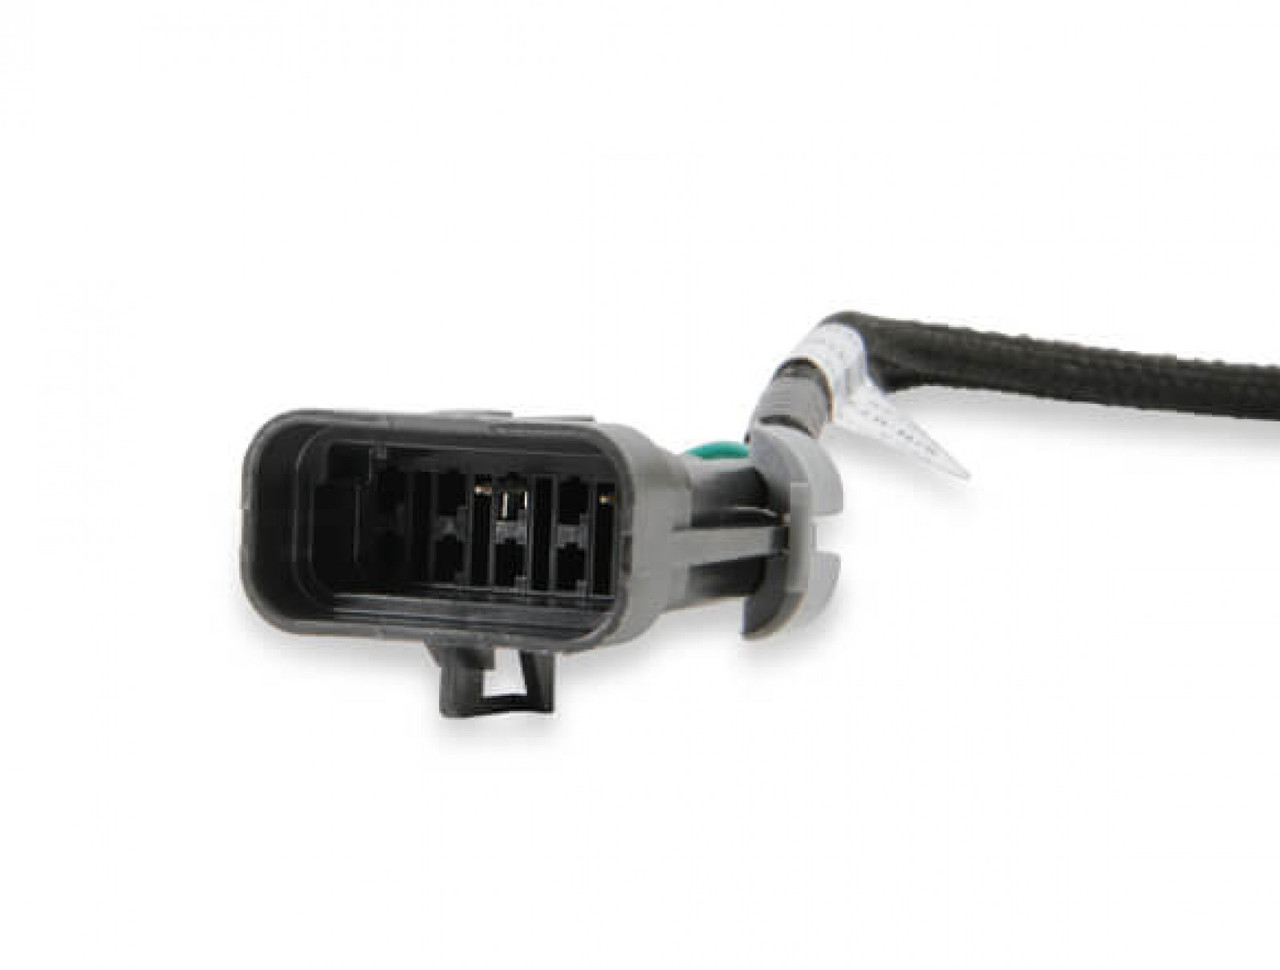 Holley EFI Pro-Billet Ignition Adapter (HOE-3558-325)